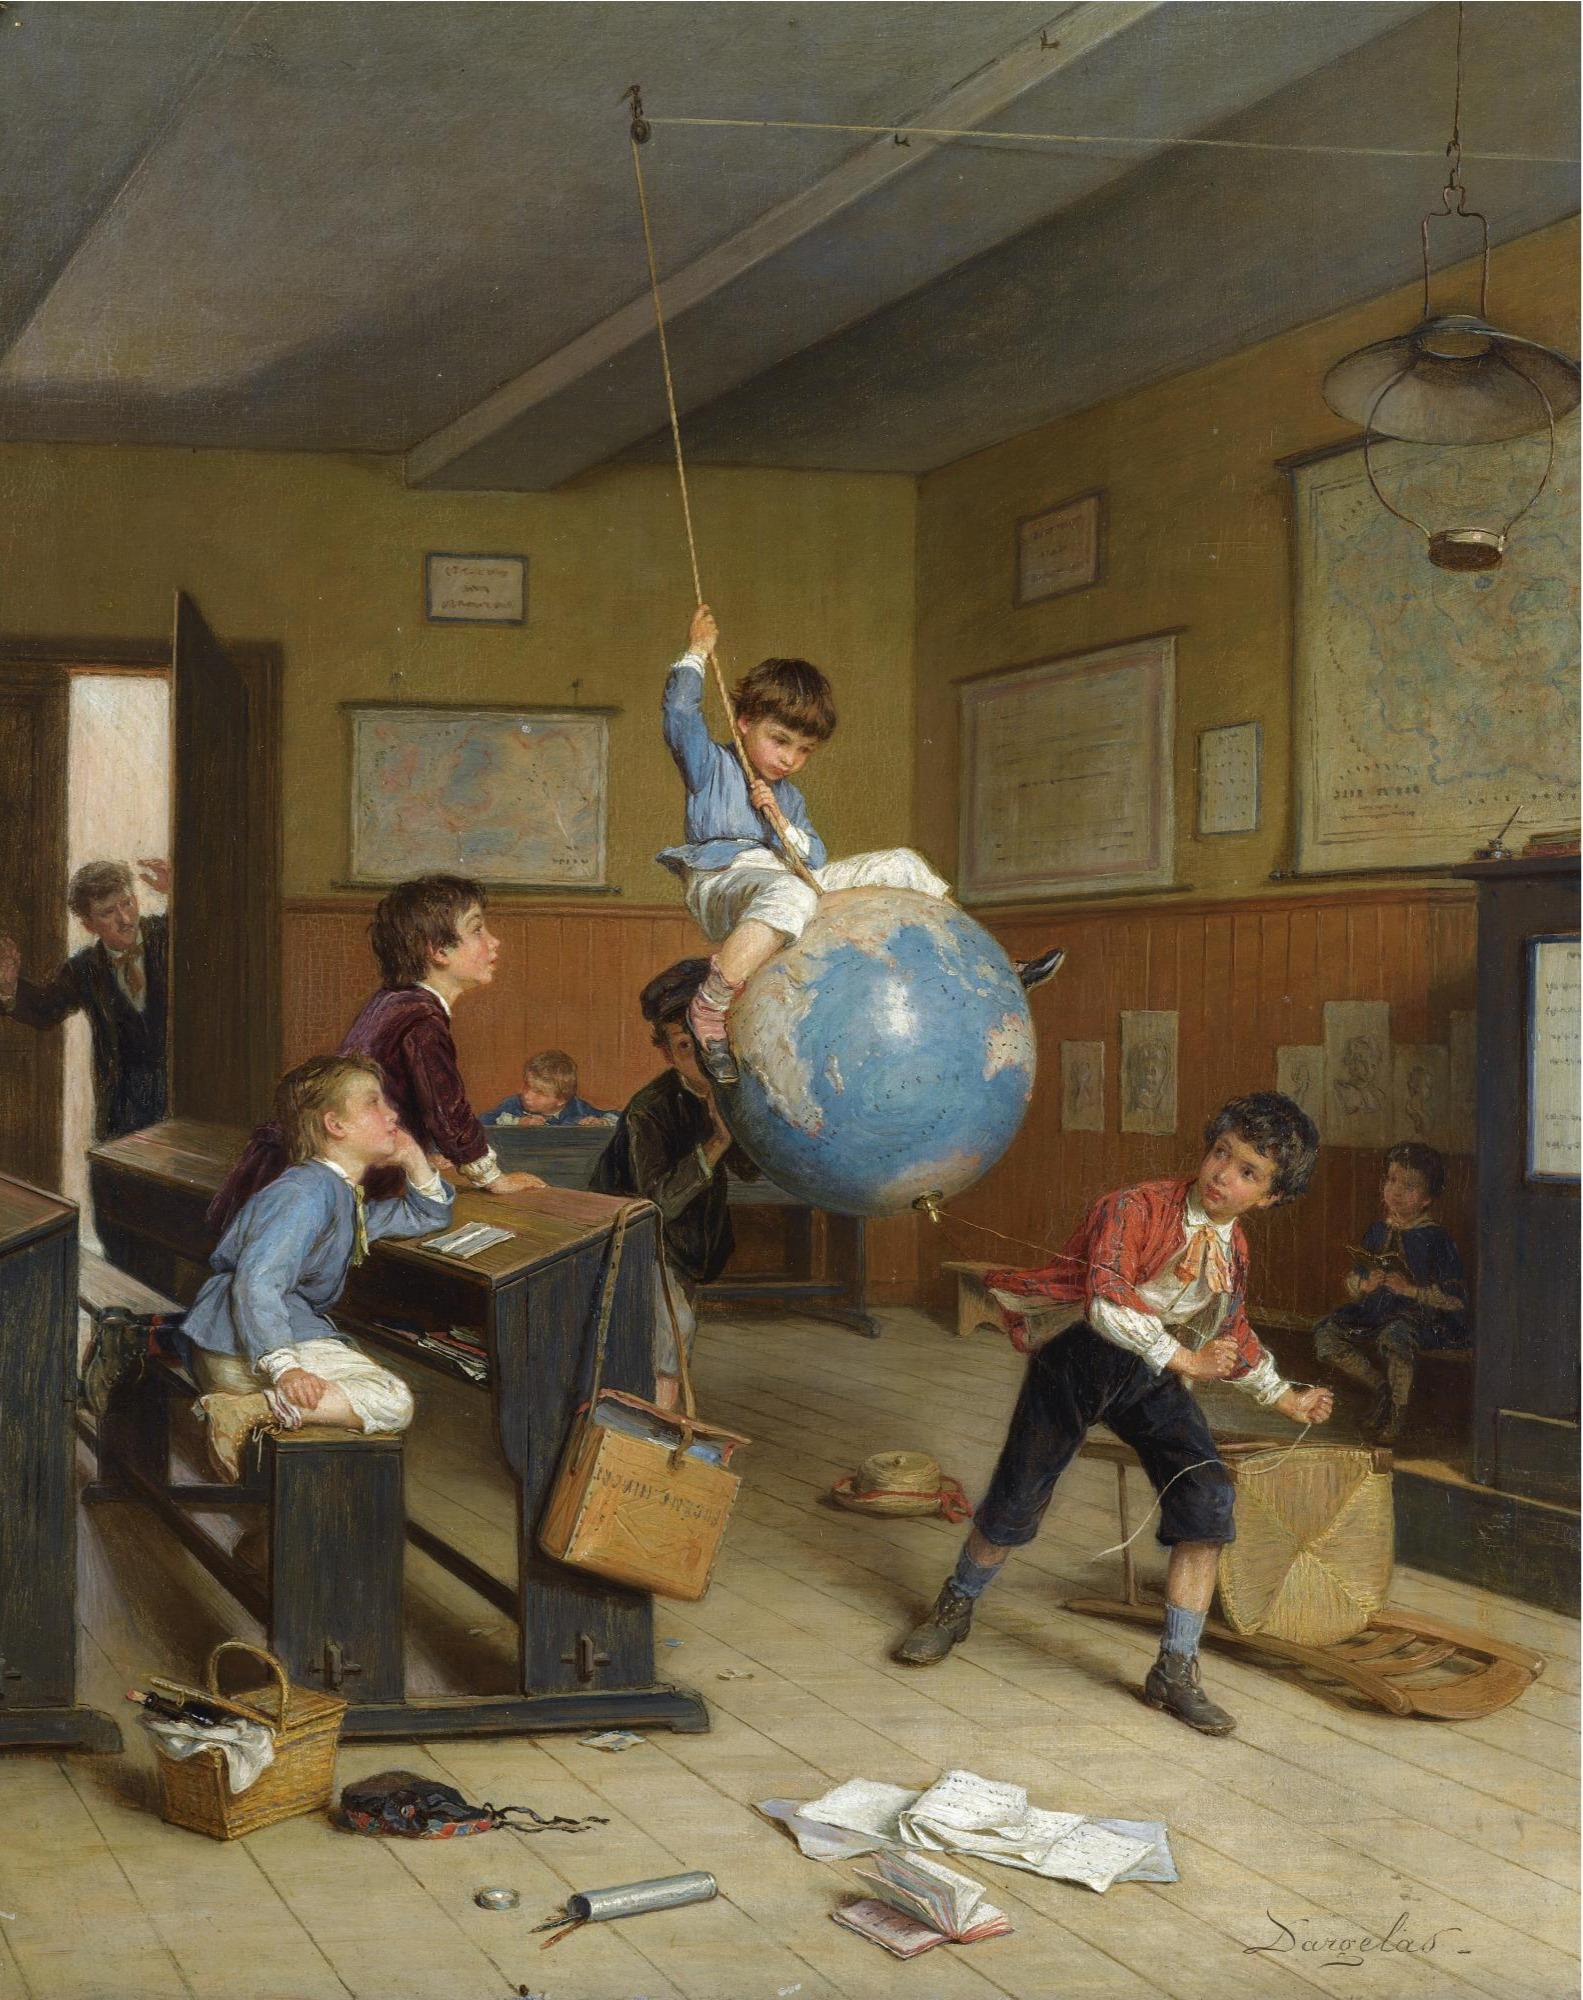 環遊世界 by André Henri Dargelas - 約 1860 年 - 46 x 37.5 釐米 